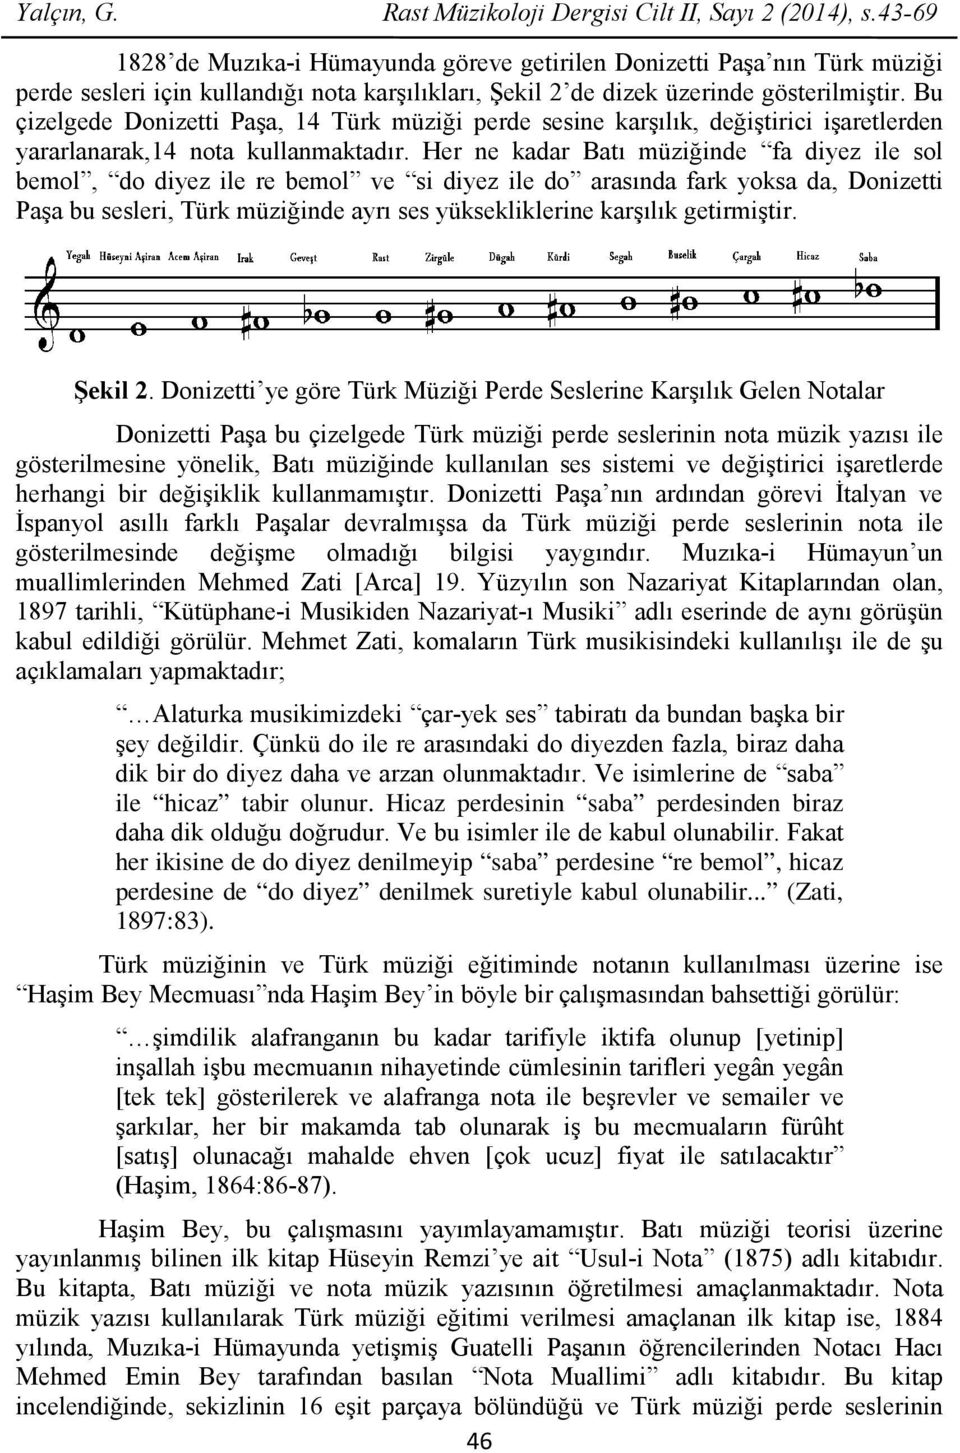 Bu çizelgede Donizetti Paşa, 14 Türk müziği perde sesine karşılık, değiştirici işaretlerden yararlanarak,14 nota kullanmaktadır.